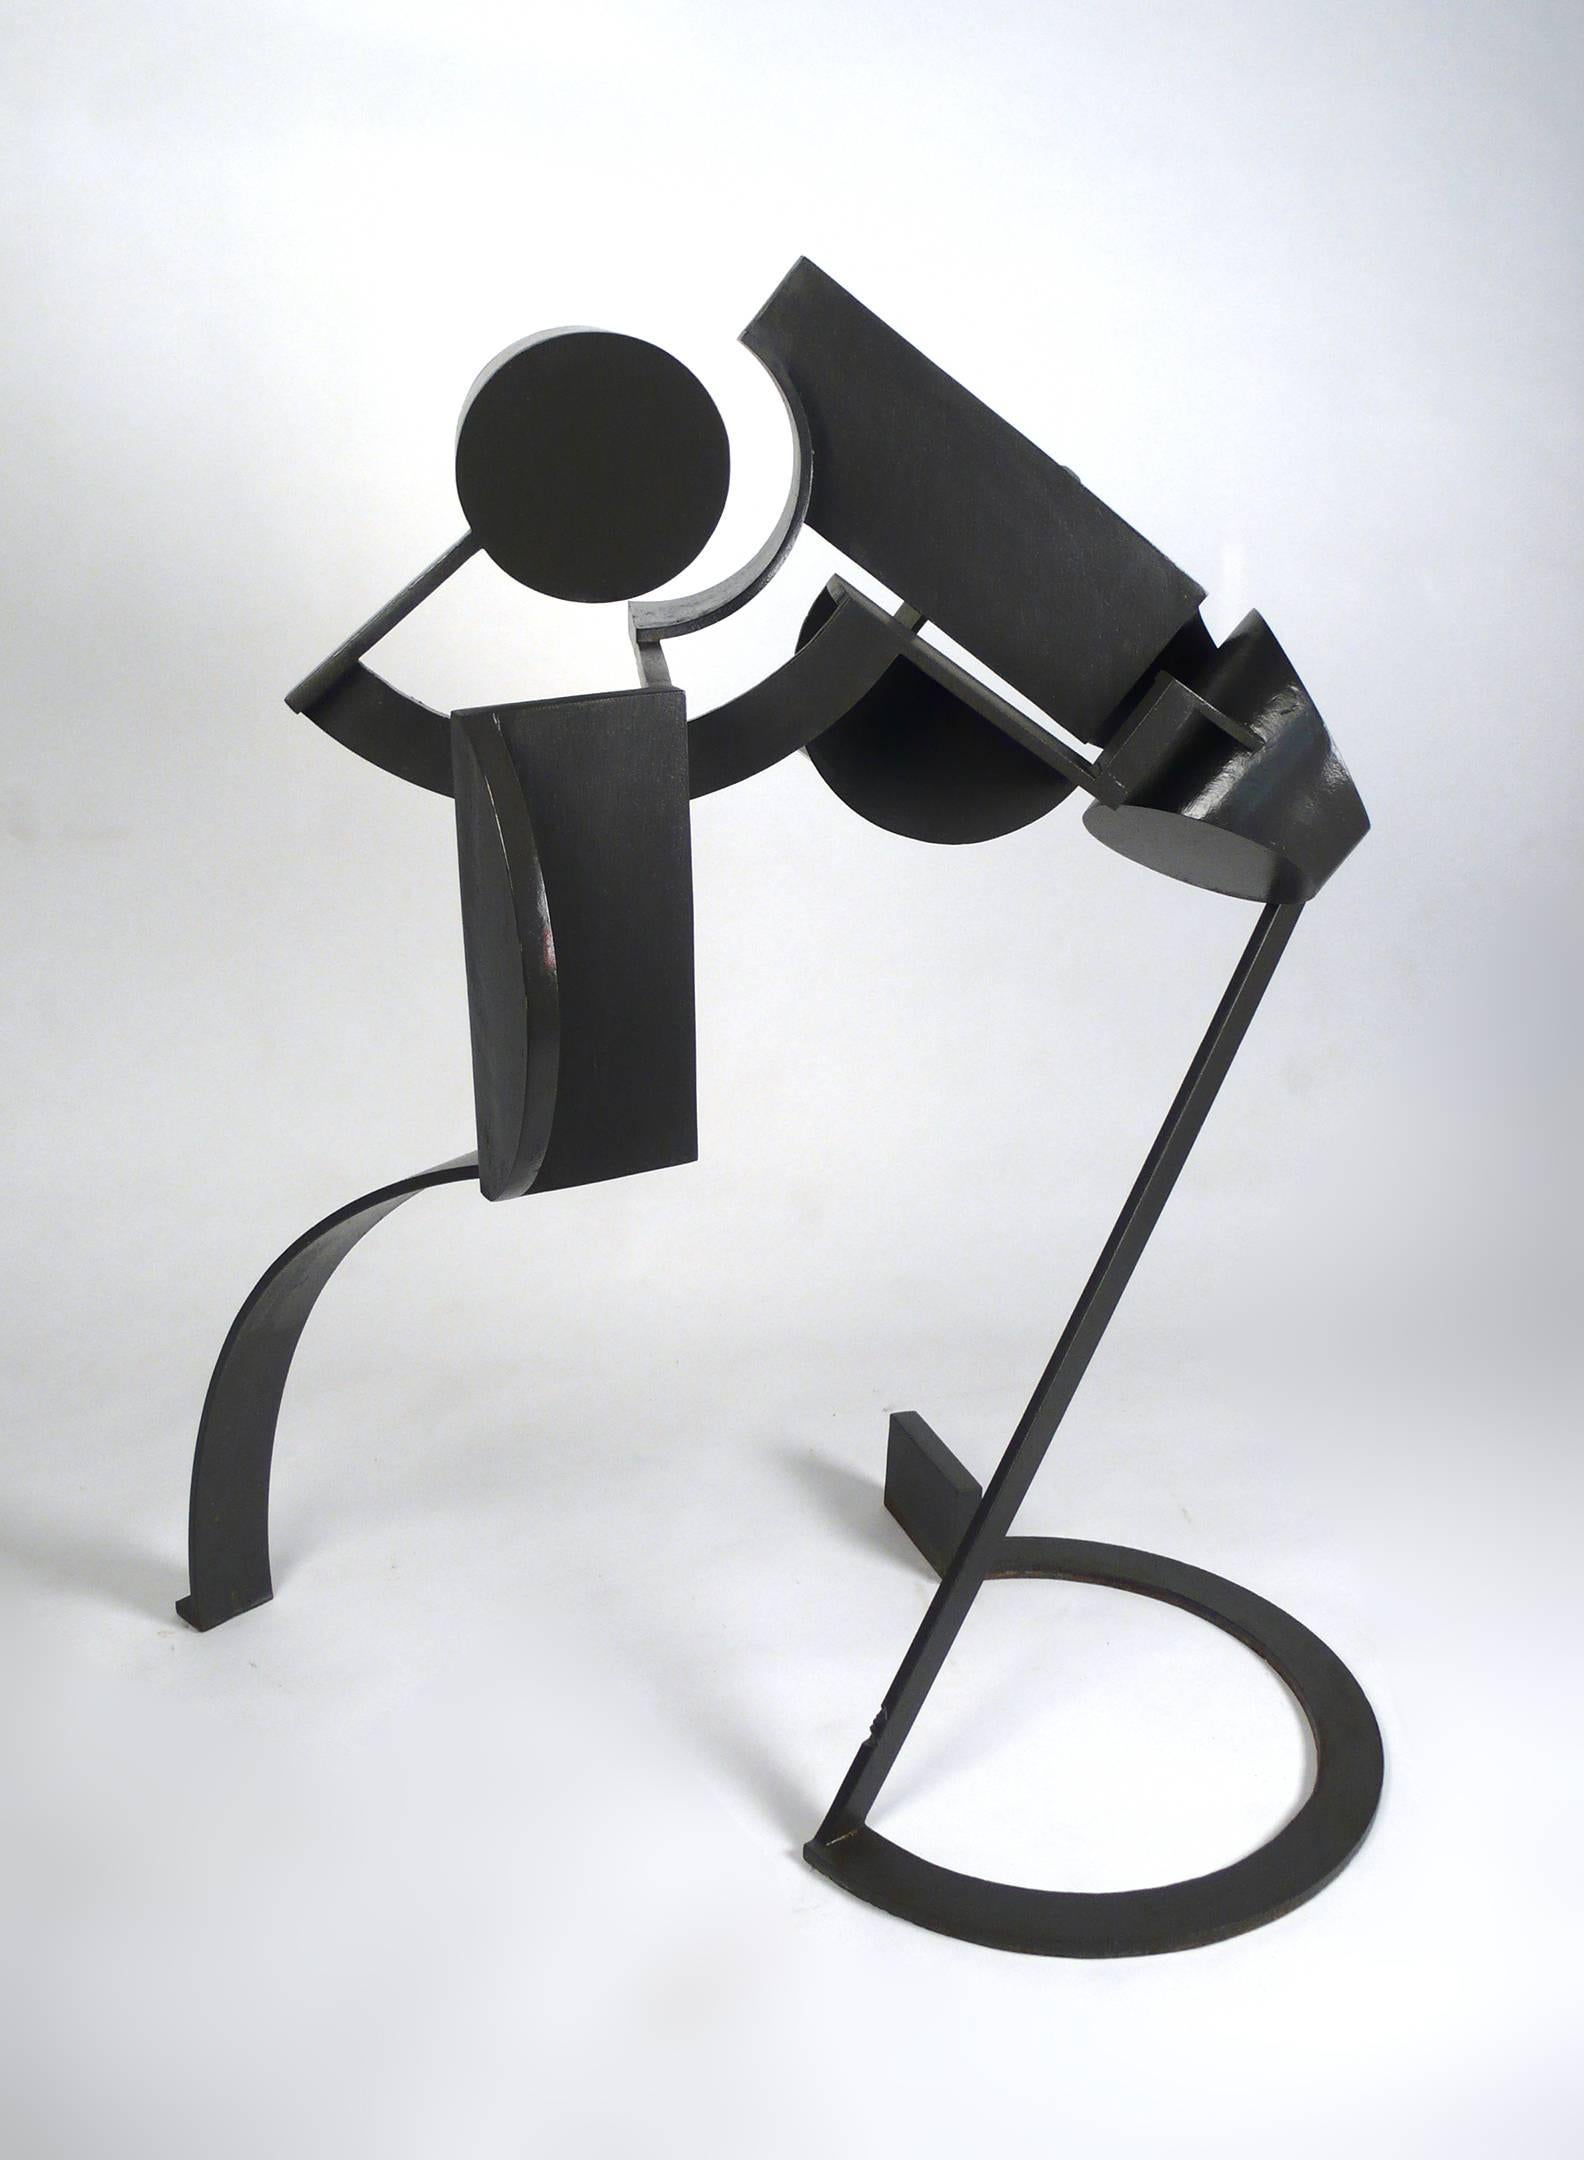 Sculpture abstraite moderniste en acier réalisée par l'artiste texan Marshall Cunningham. Cette sculpture est une commande privée pour la famille Norman V. Kinsey de Shreveport LA. Il a environ 30 ans et conserve sa finition d'origine. Les deux